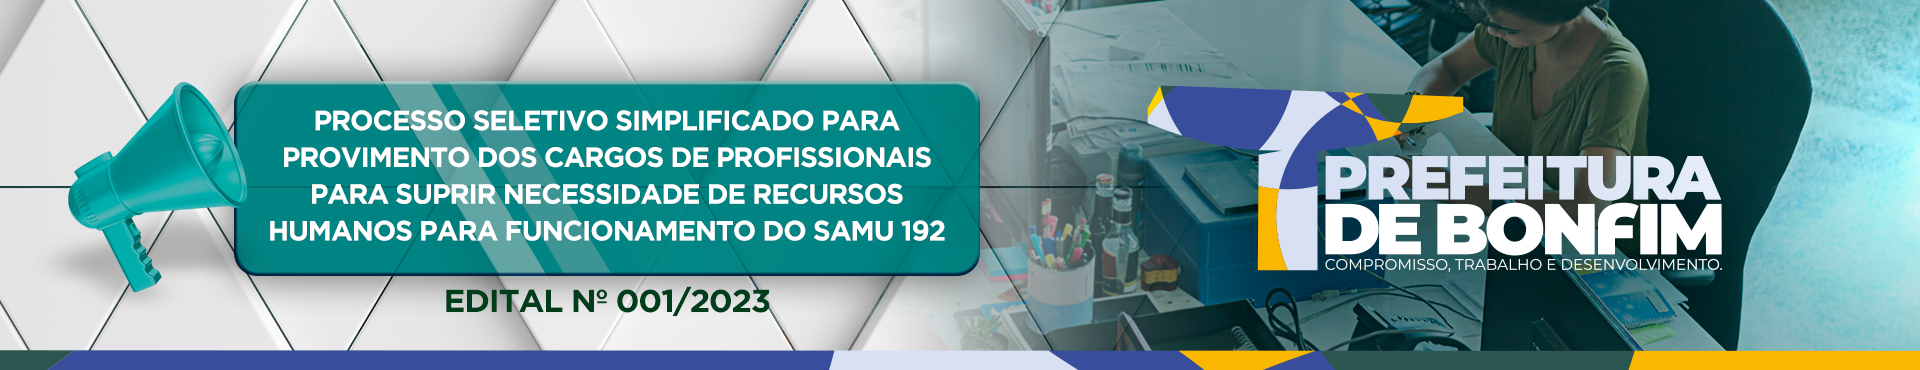 EDITAL DO PROCESSO SELETIVO SIMPLIFICADO Nº 001/2023 - PARA PROVIMENTO DOS CARGO